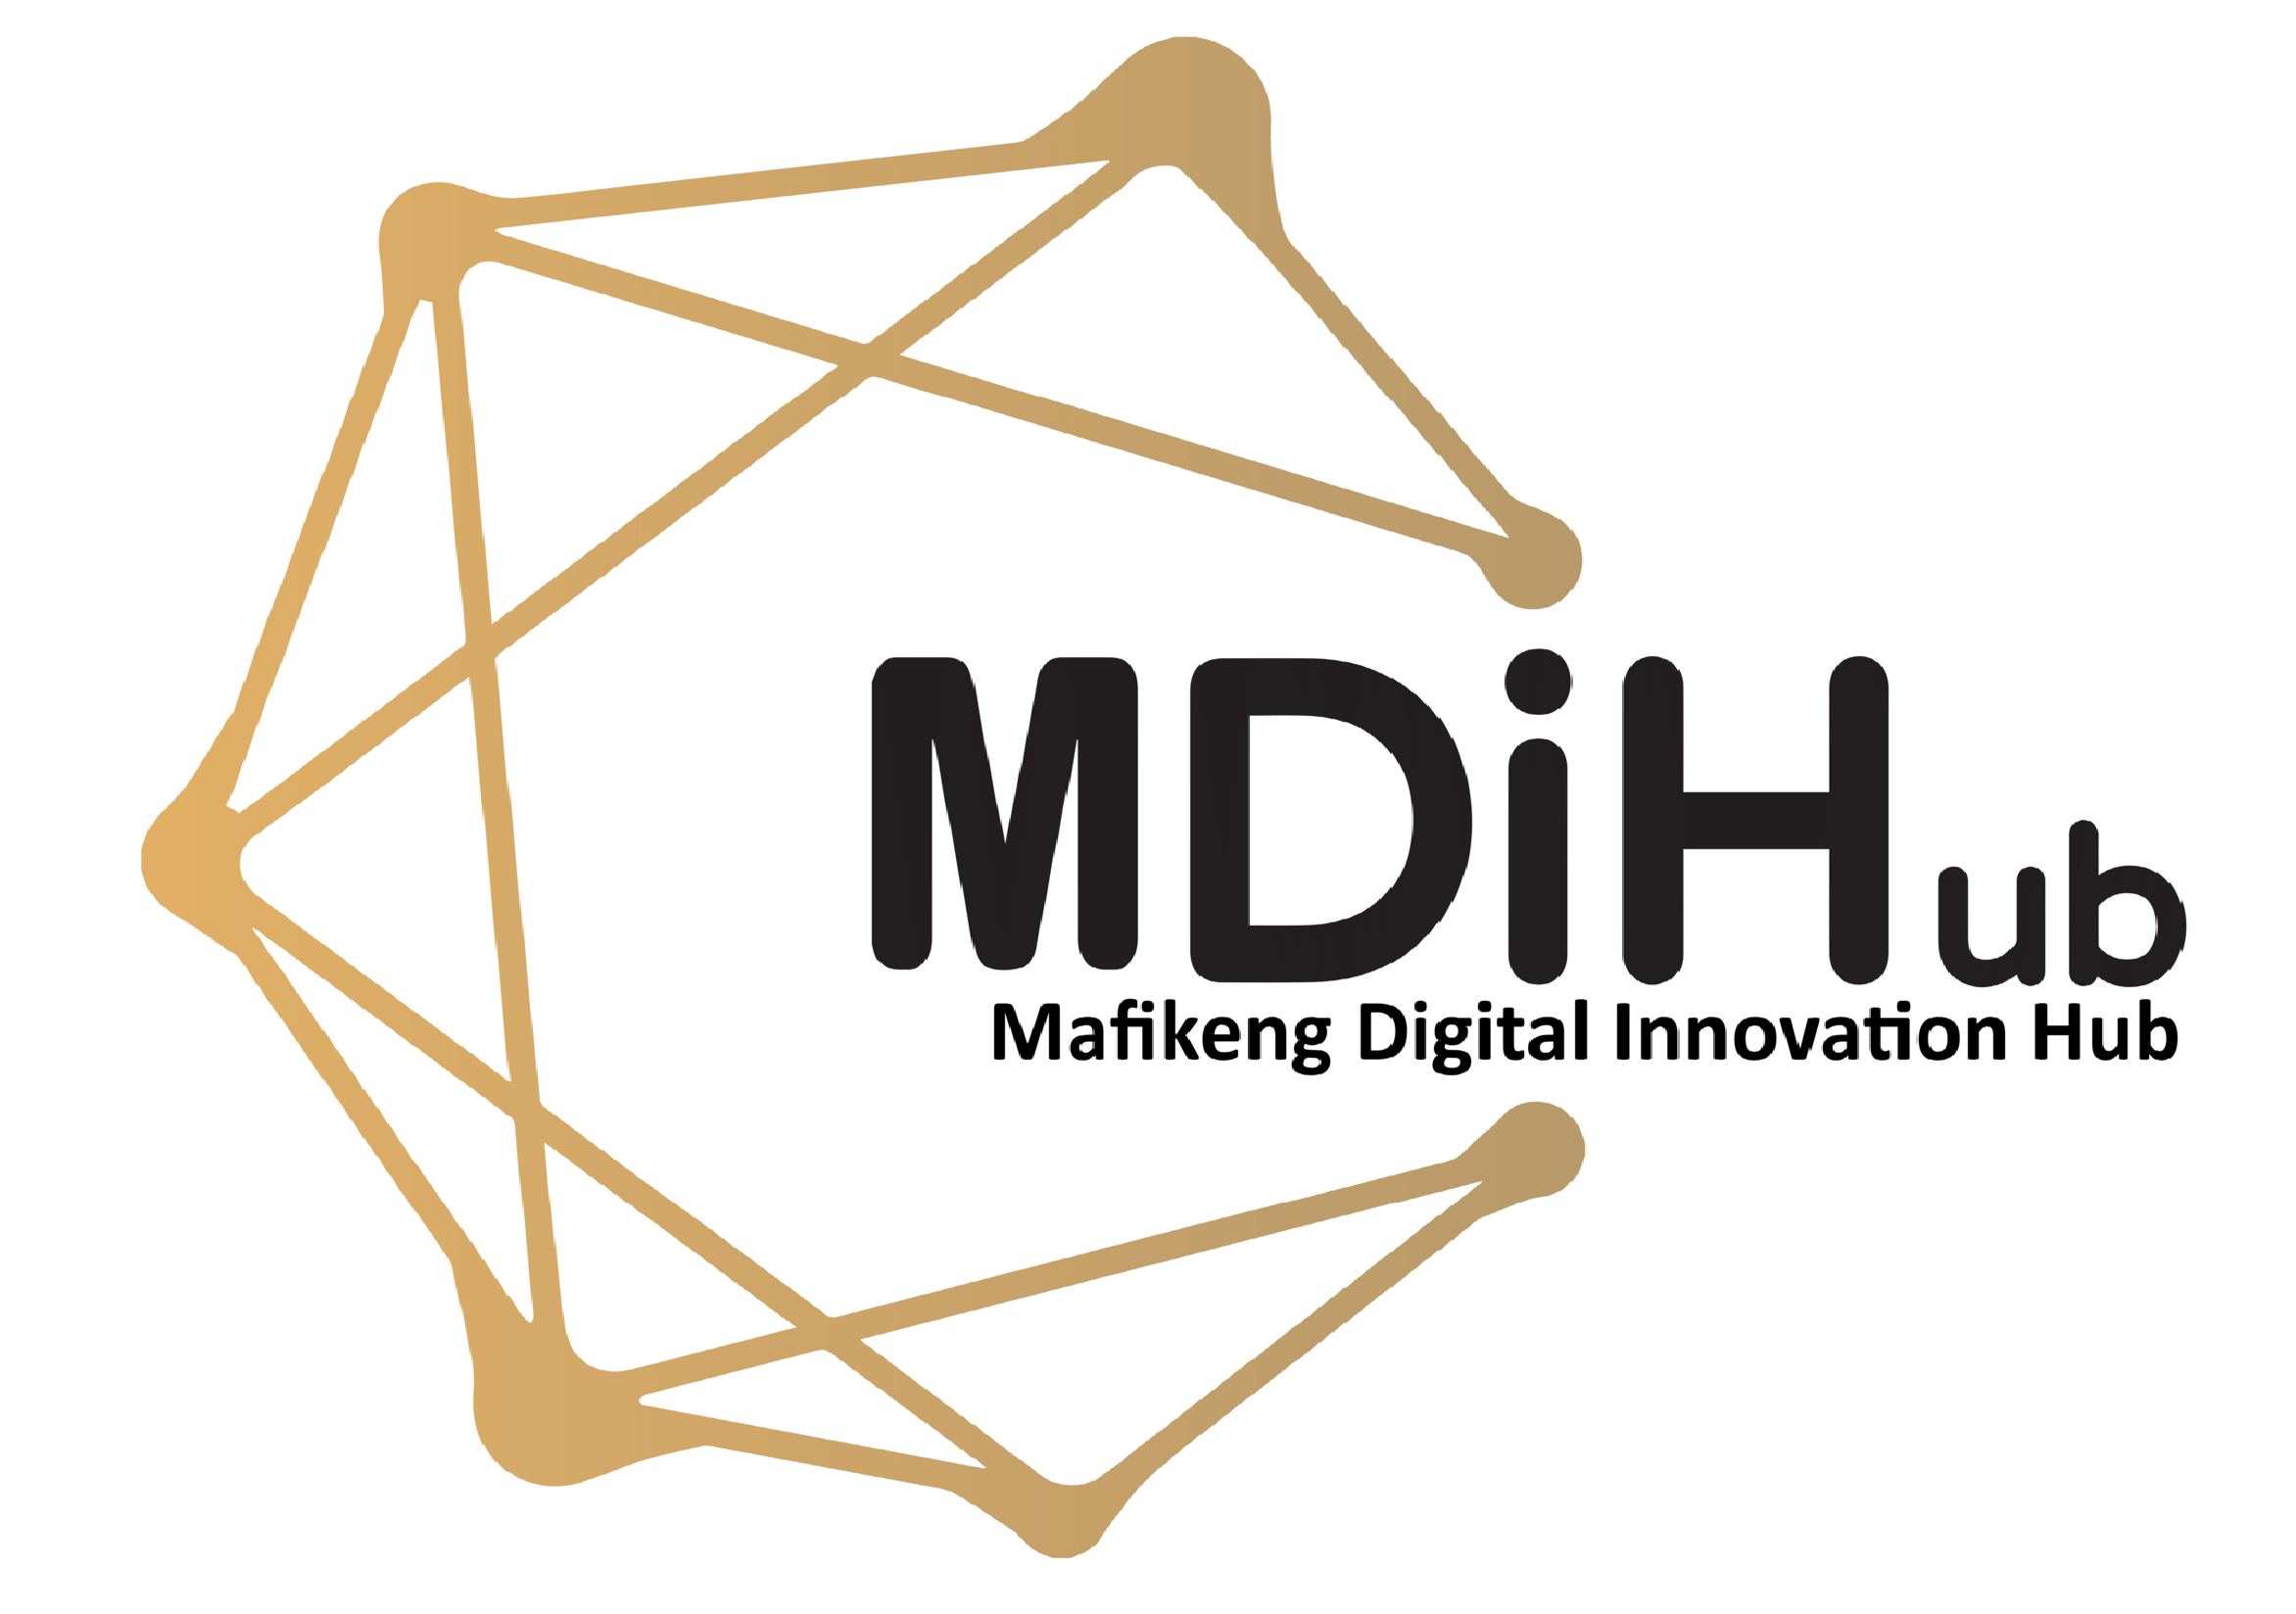 Mafikeng Digital Innovation Hub